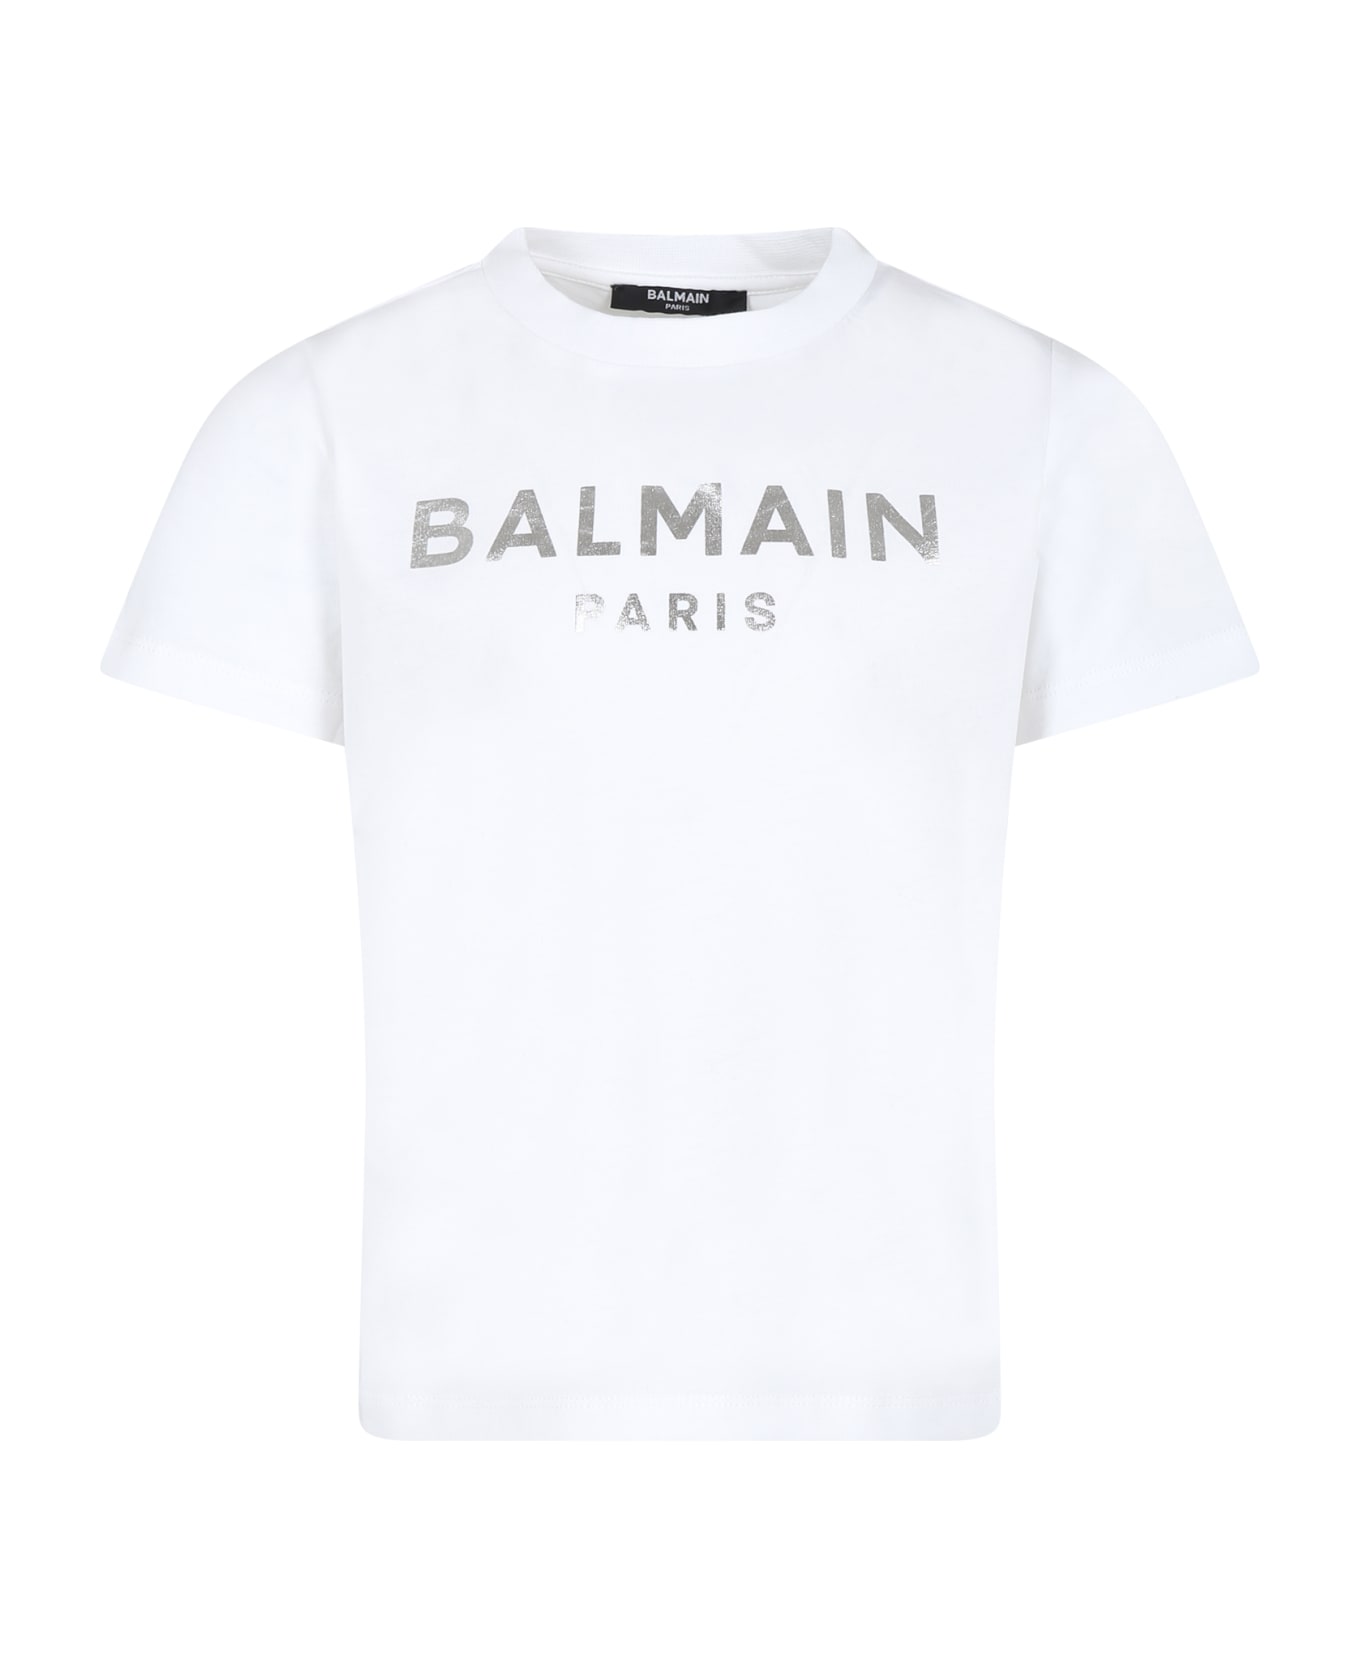 Balmain White T-shirt For Boy With Logo - White